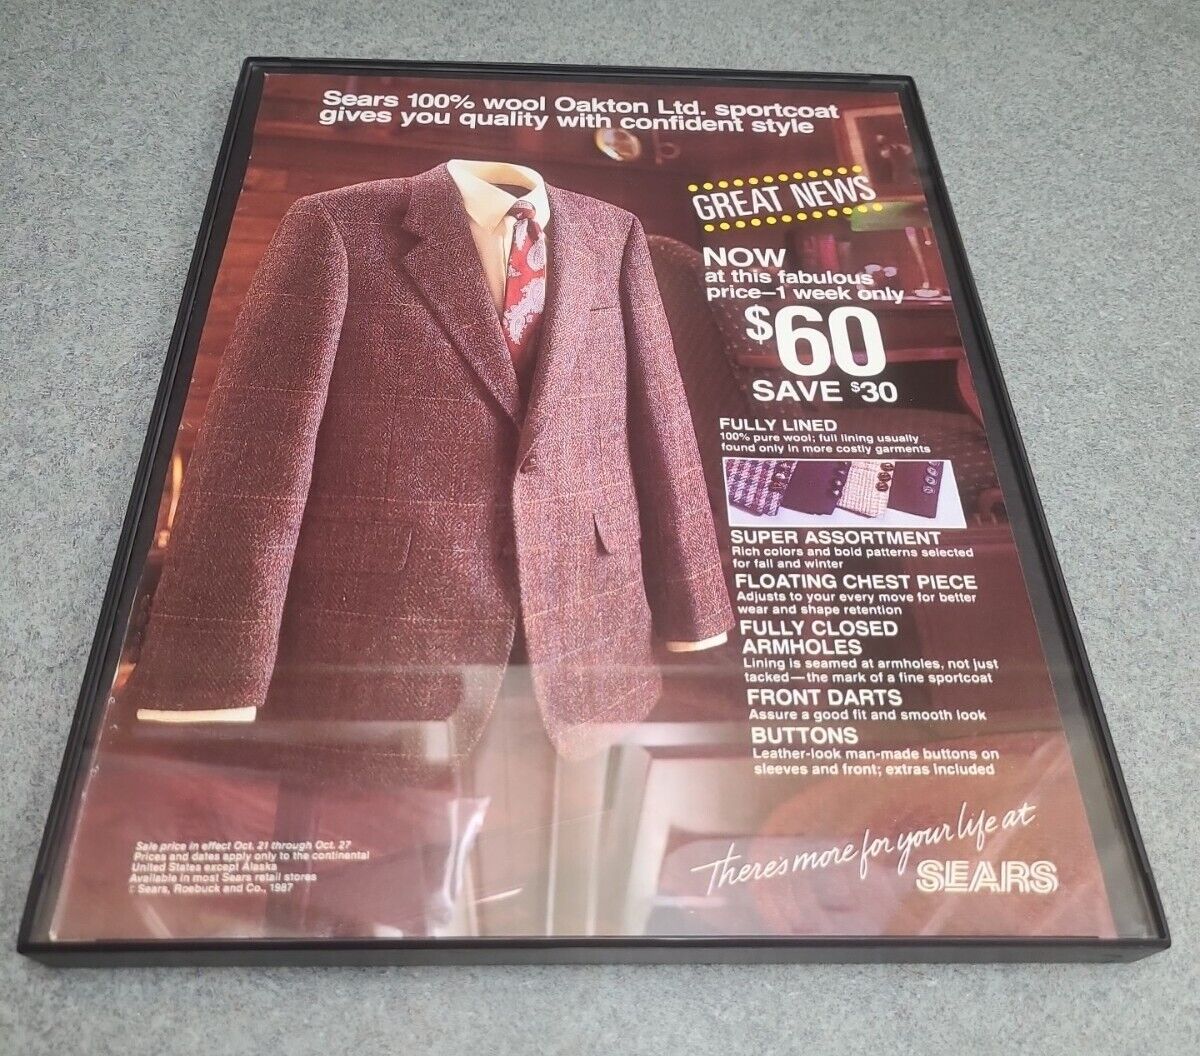 Sears Oakton Ltd. Sportscost Print Ad 1987 Framed 8.5x11 